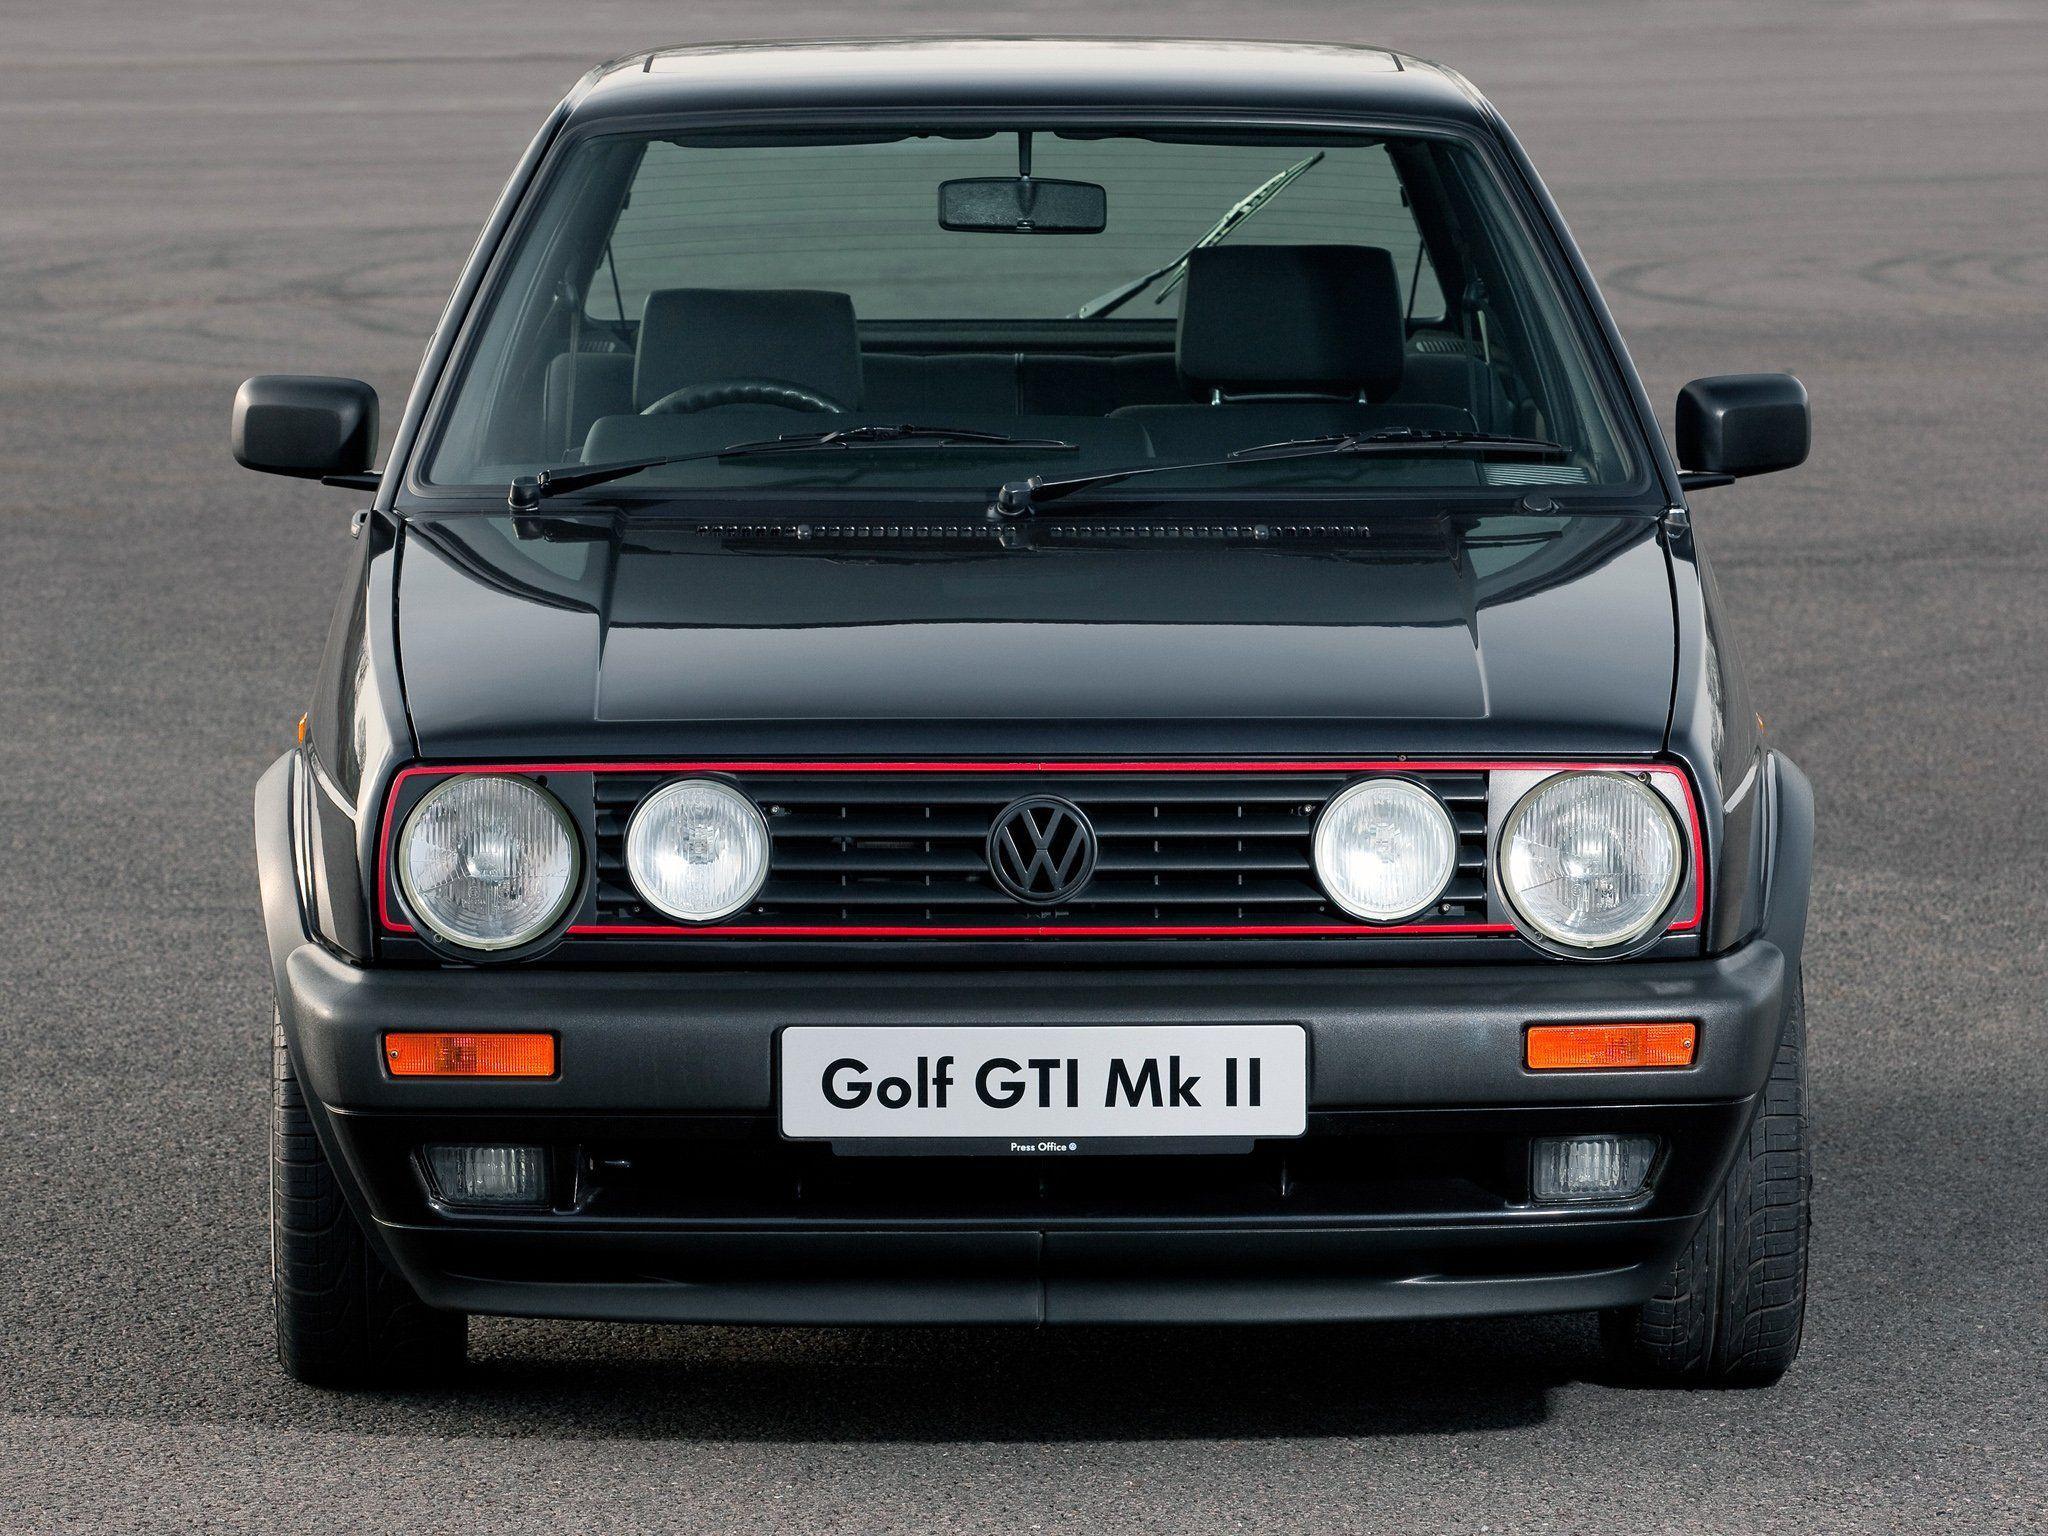 Volkswagen Golf GTI Mk2 3 Door UK Spec Cars Wallpaperx1536